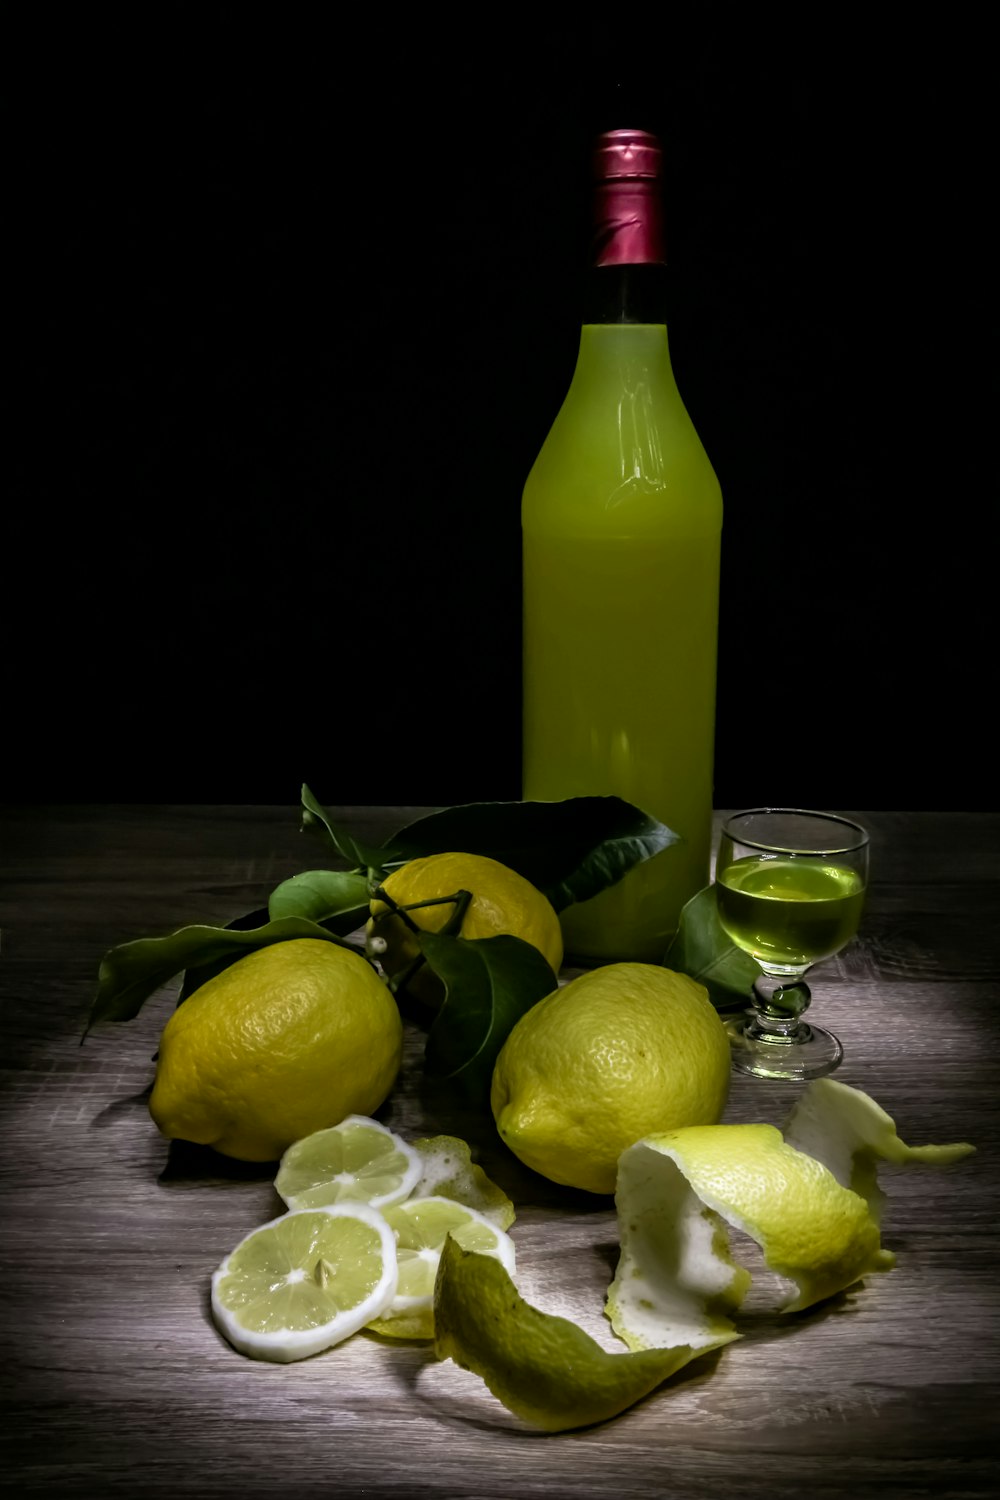 tas de citrons jaunes et de boissons